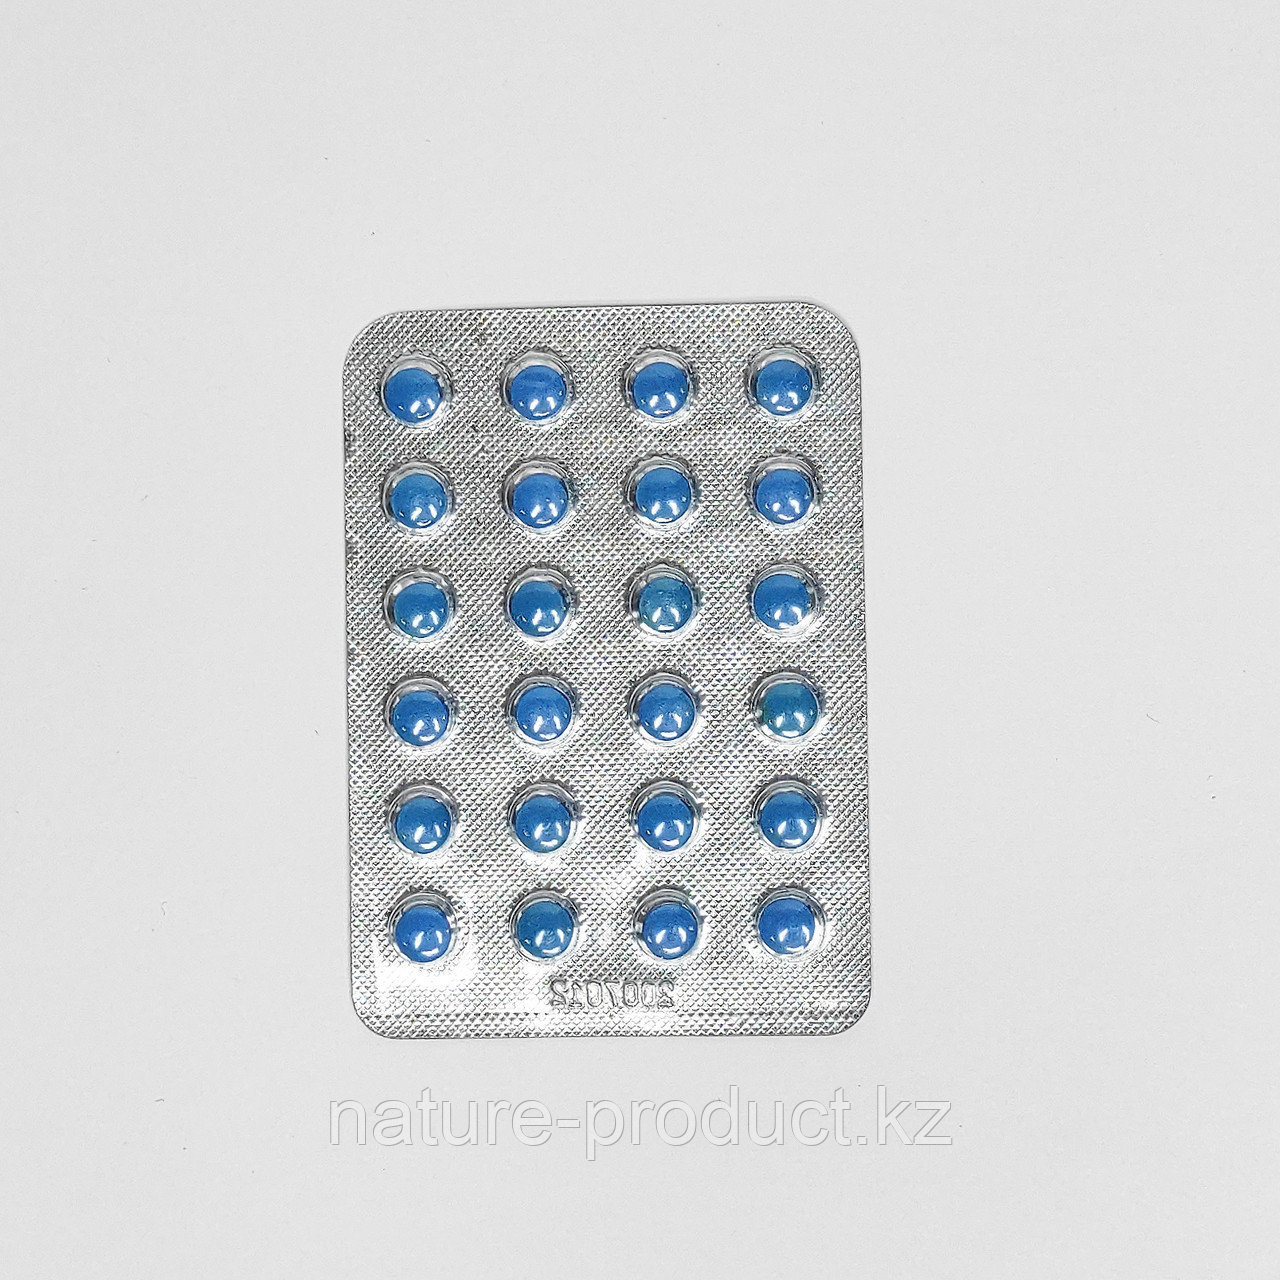 Китайский Антигриппин 24 таблетки